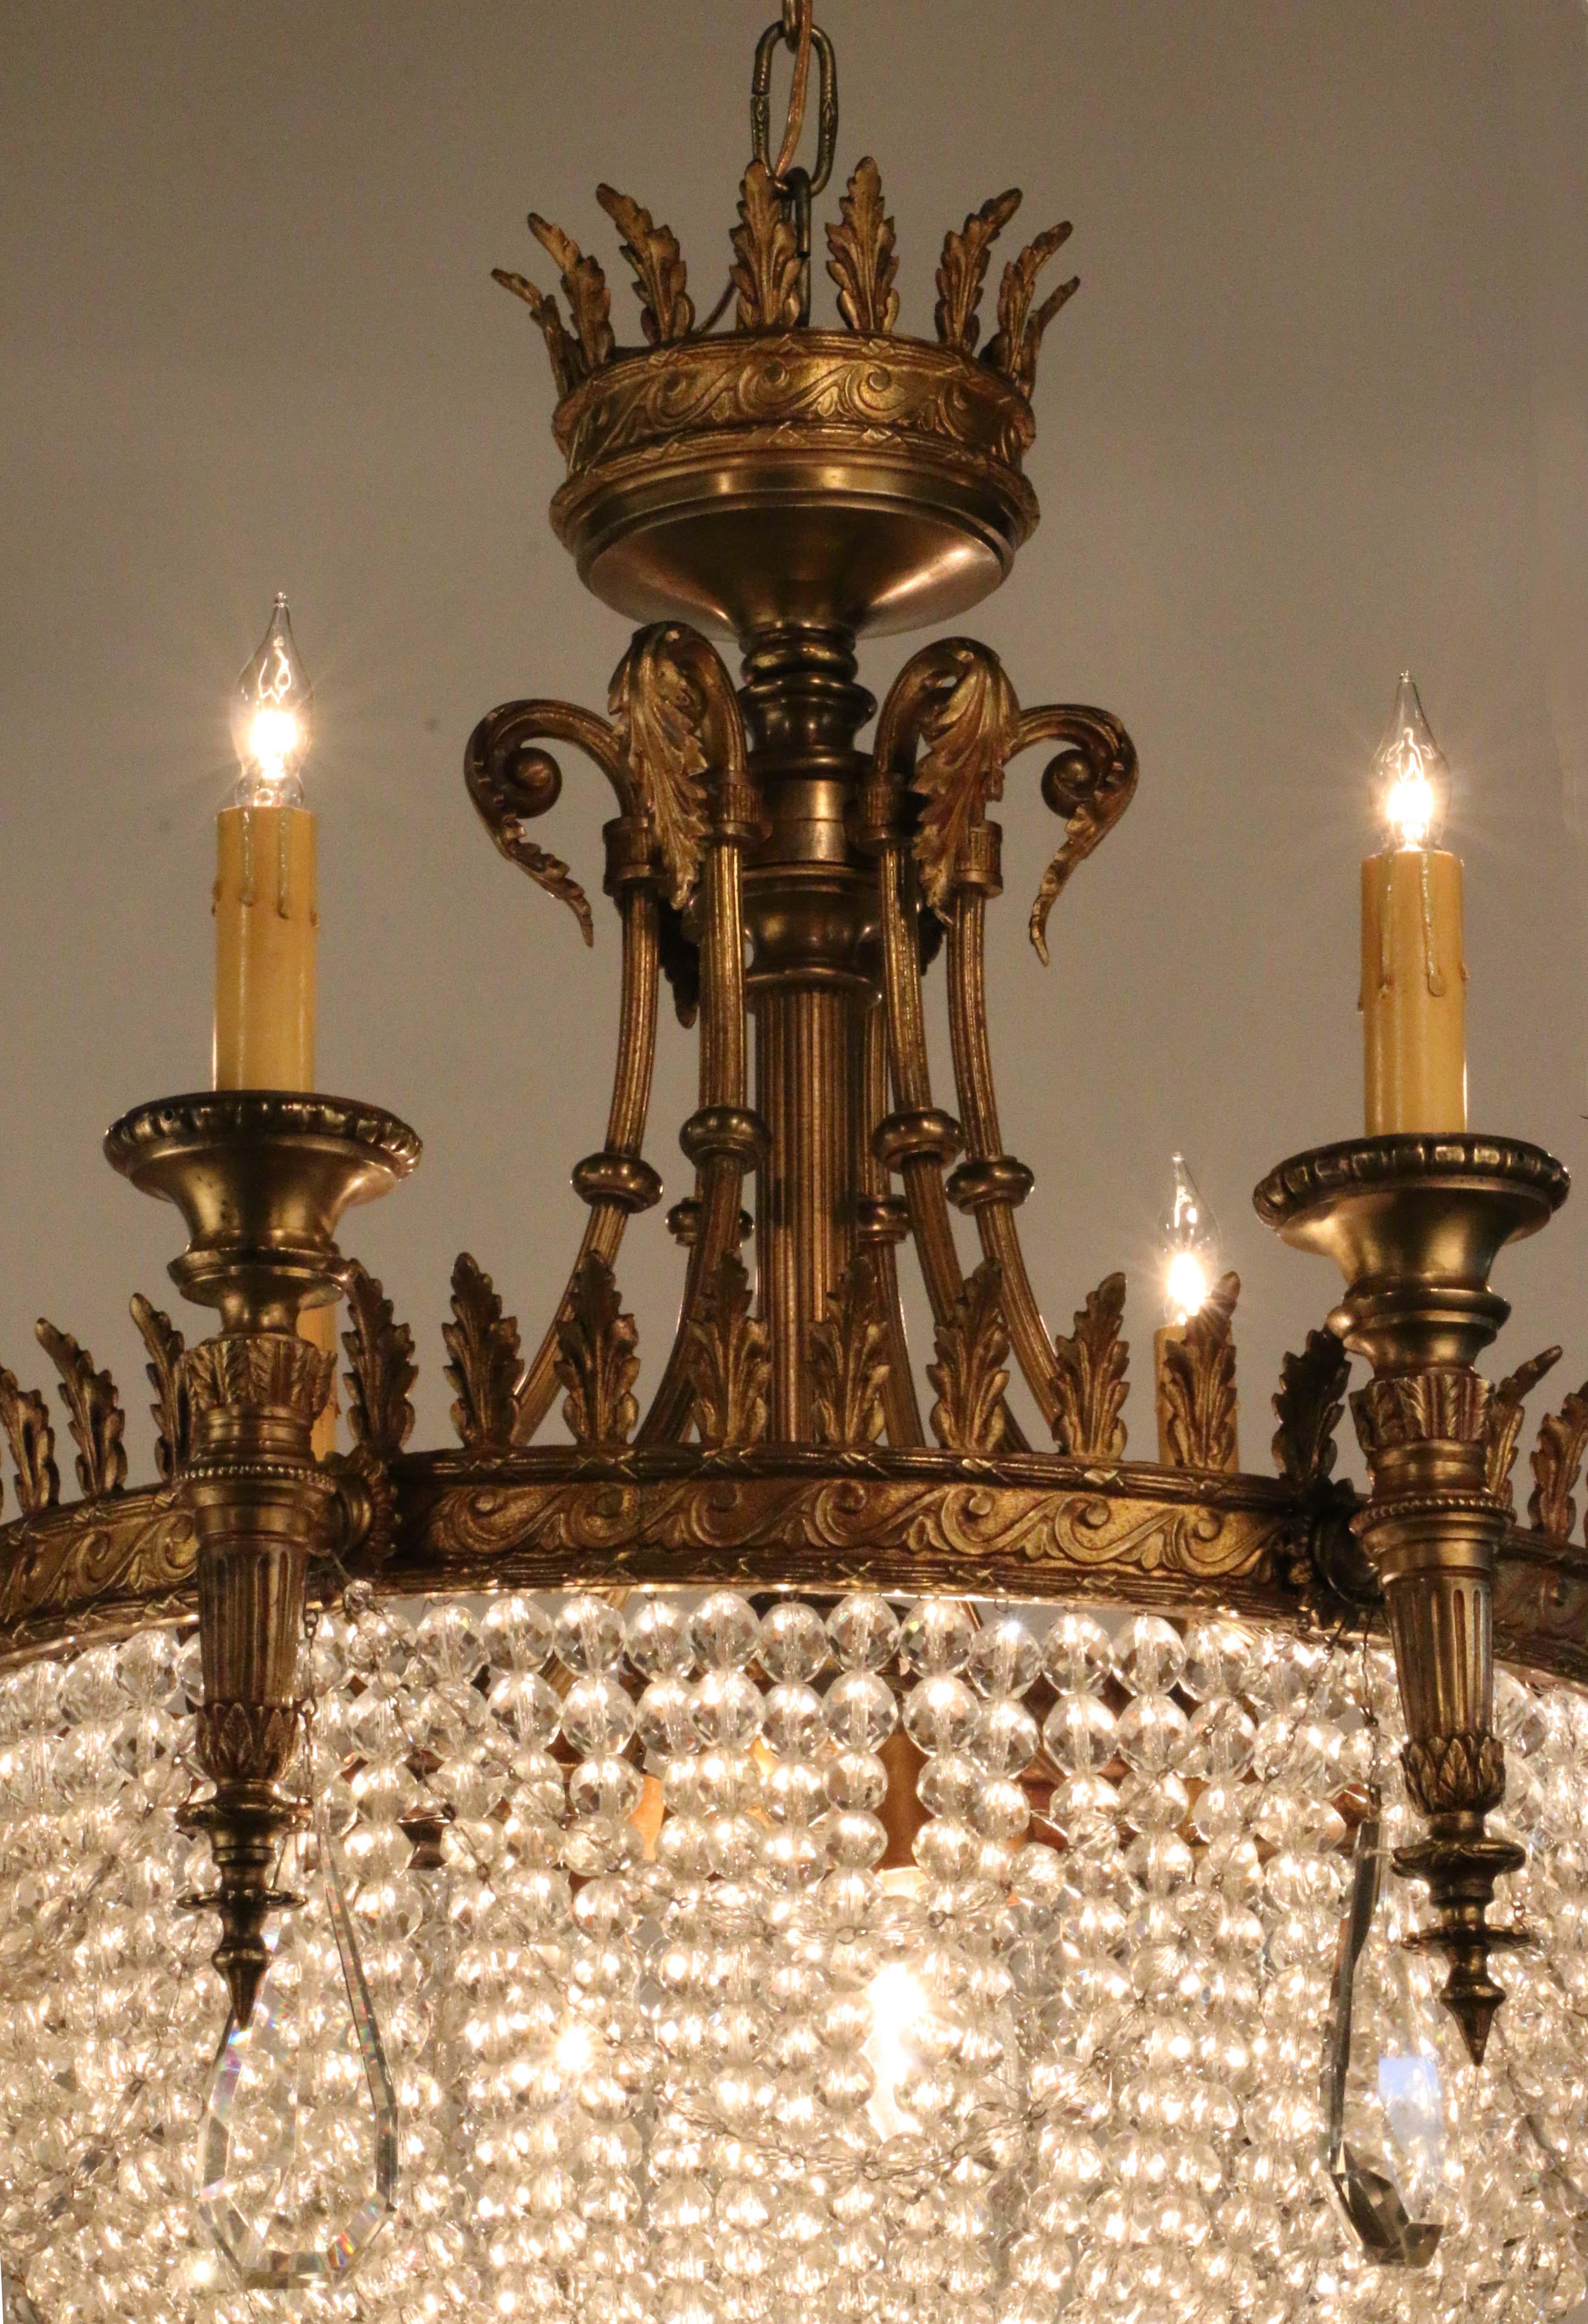 De style classique Louis XVI, il offre une source de lumière très décorative filtrée par d'exquises perles de cristal de plomb graduées, ainsi que six 